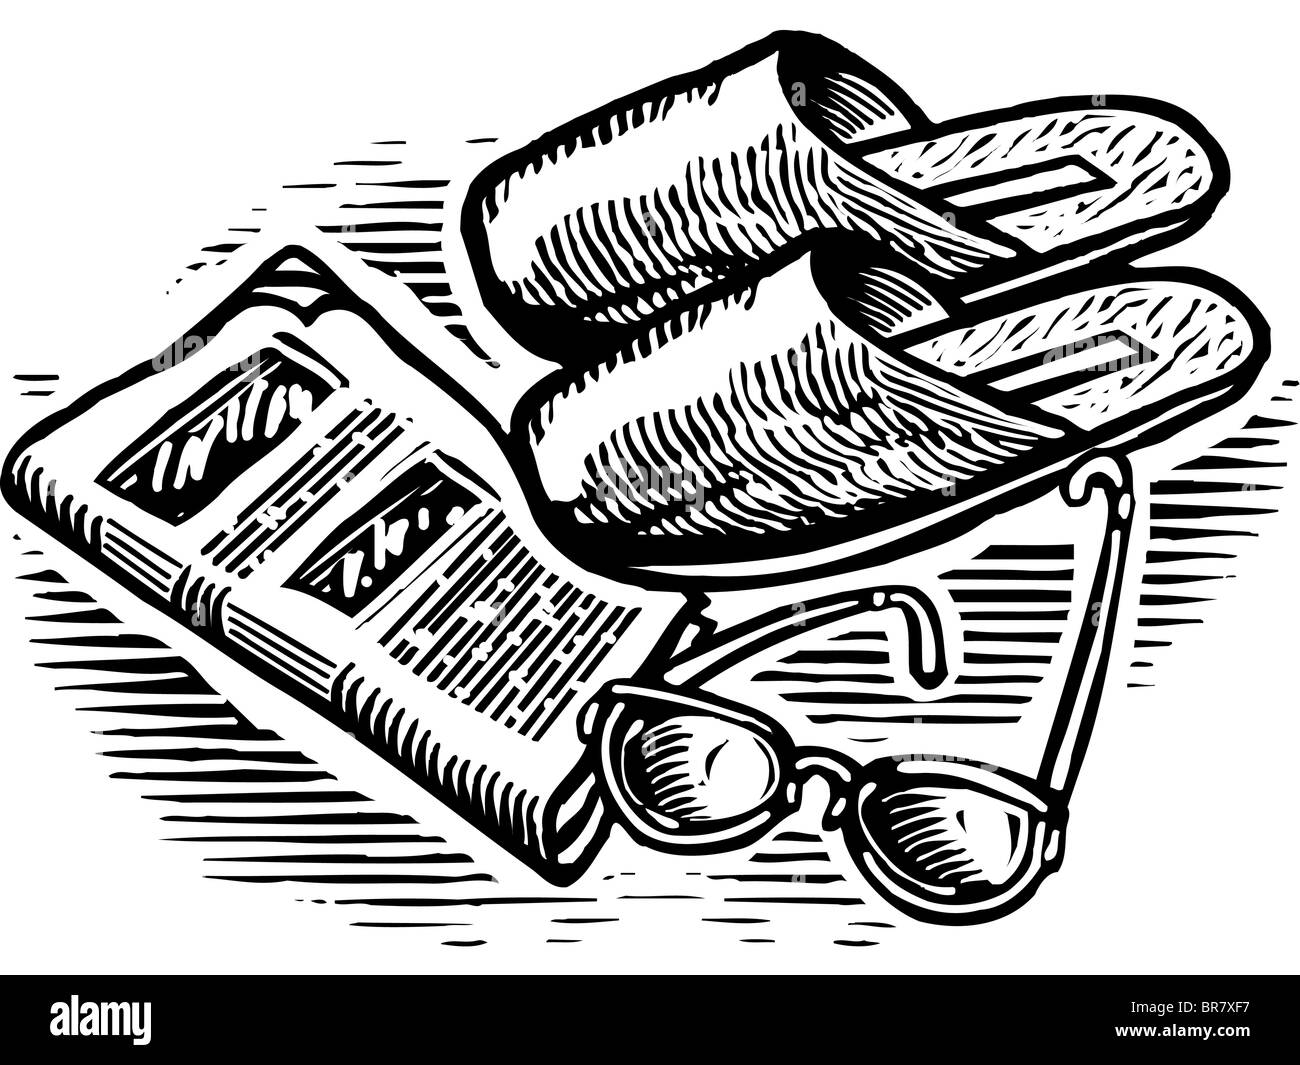 Une illustration en noir et blanc de chaussons, des verres, et de journaux Banque D'Images